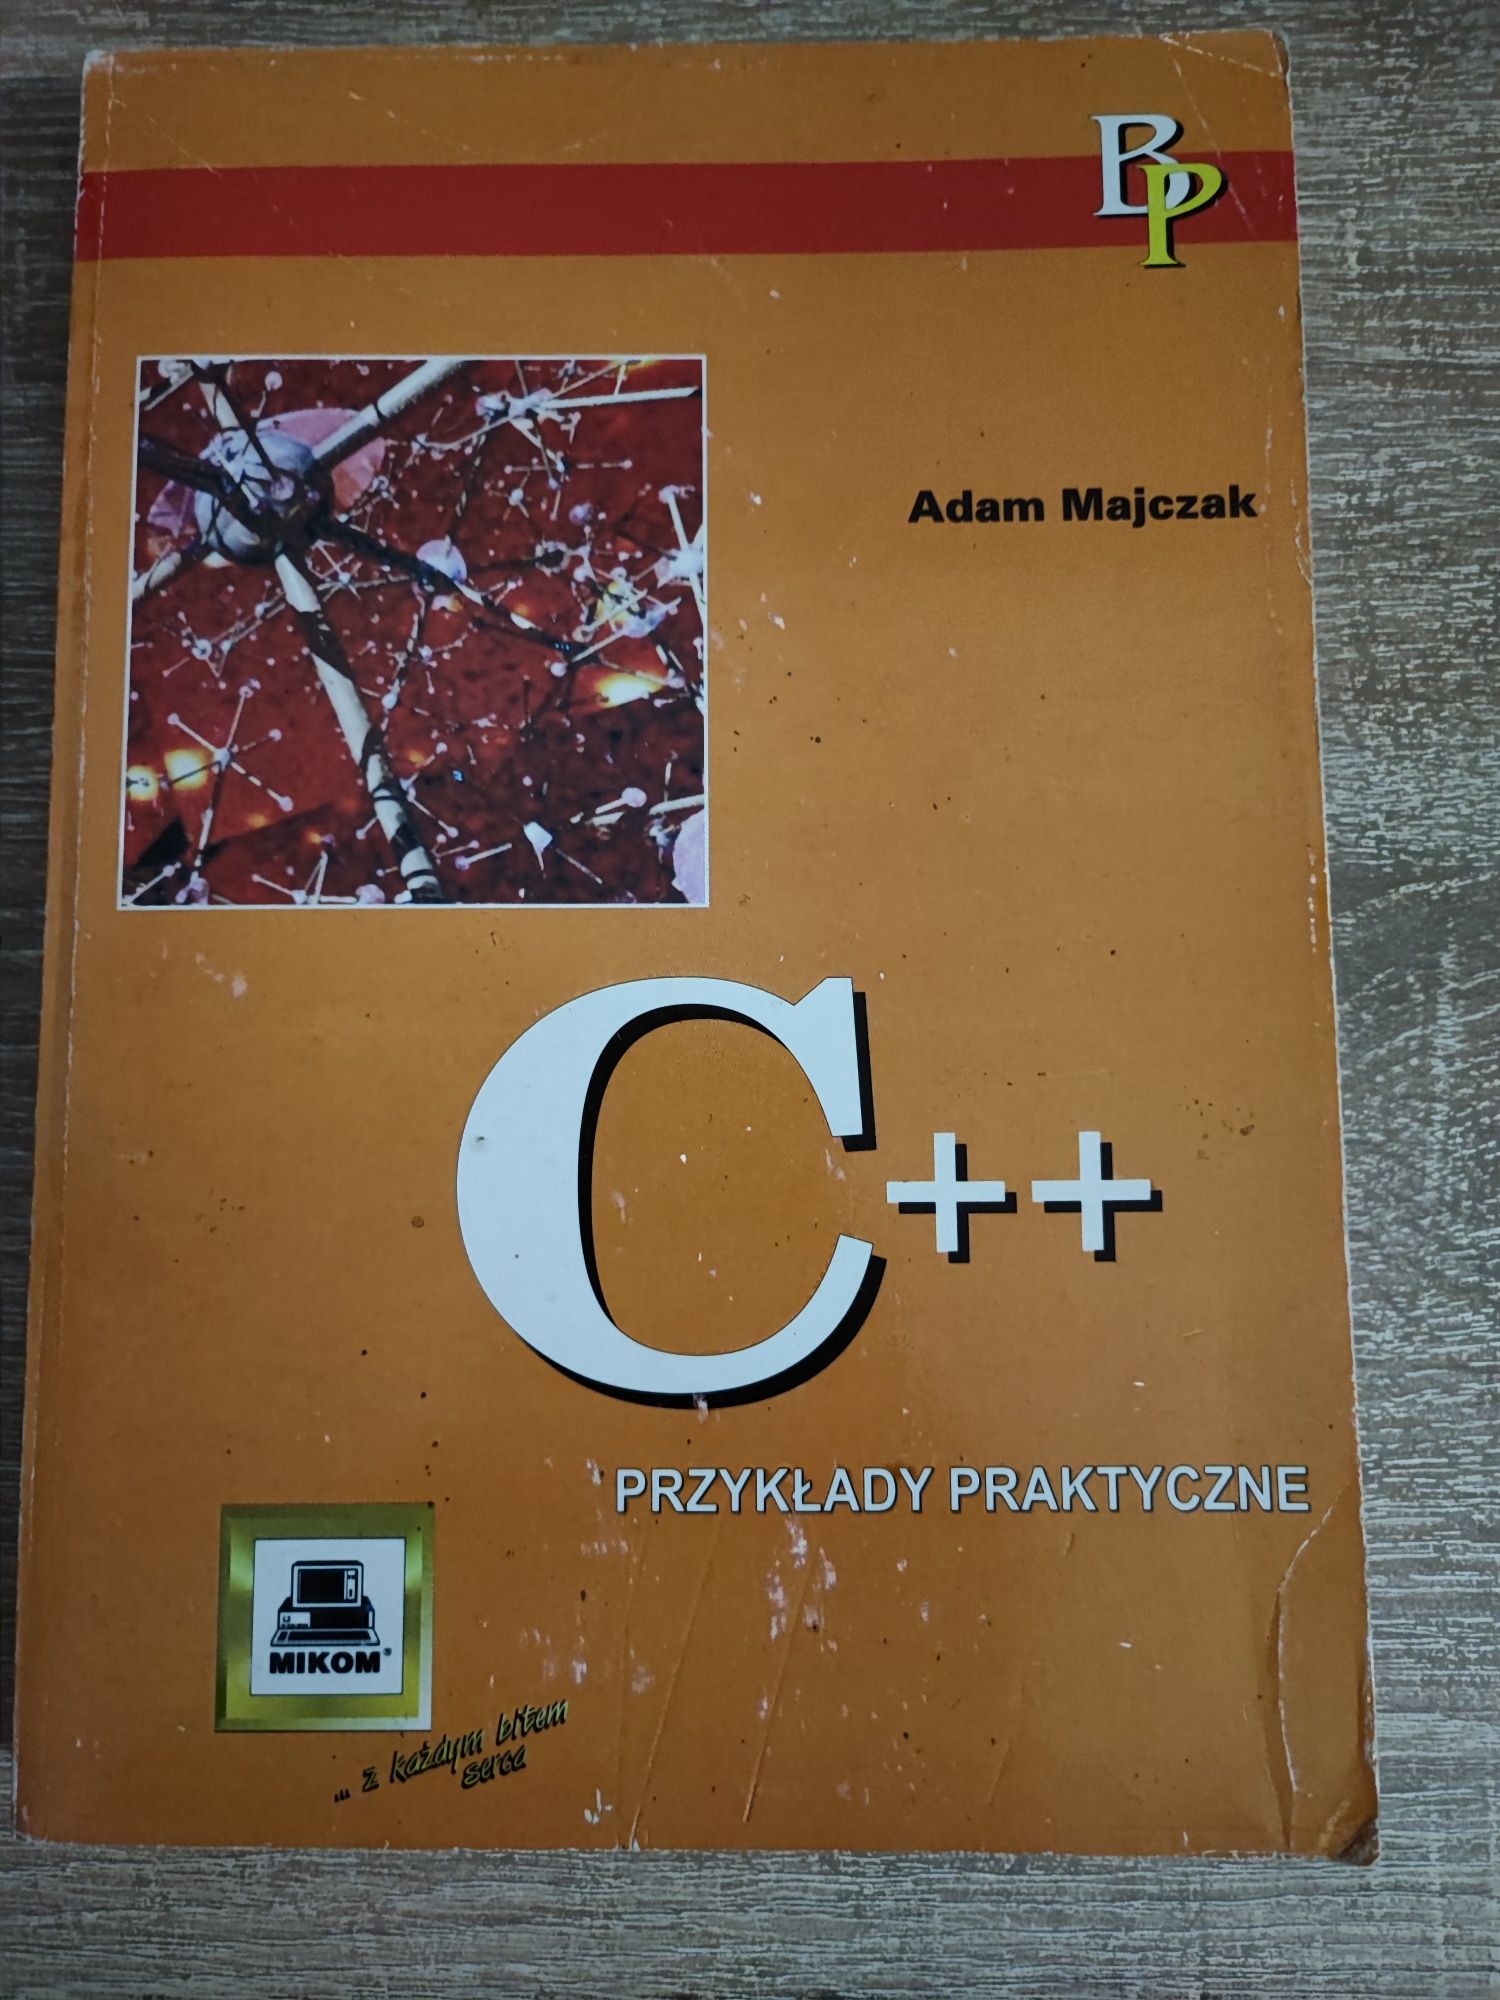 Książka używana "C++ Przykłady praktyczne"